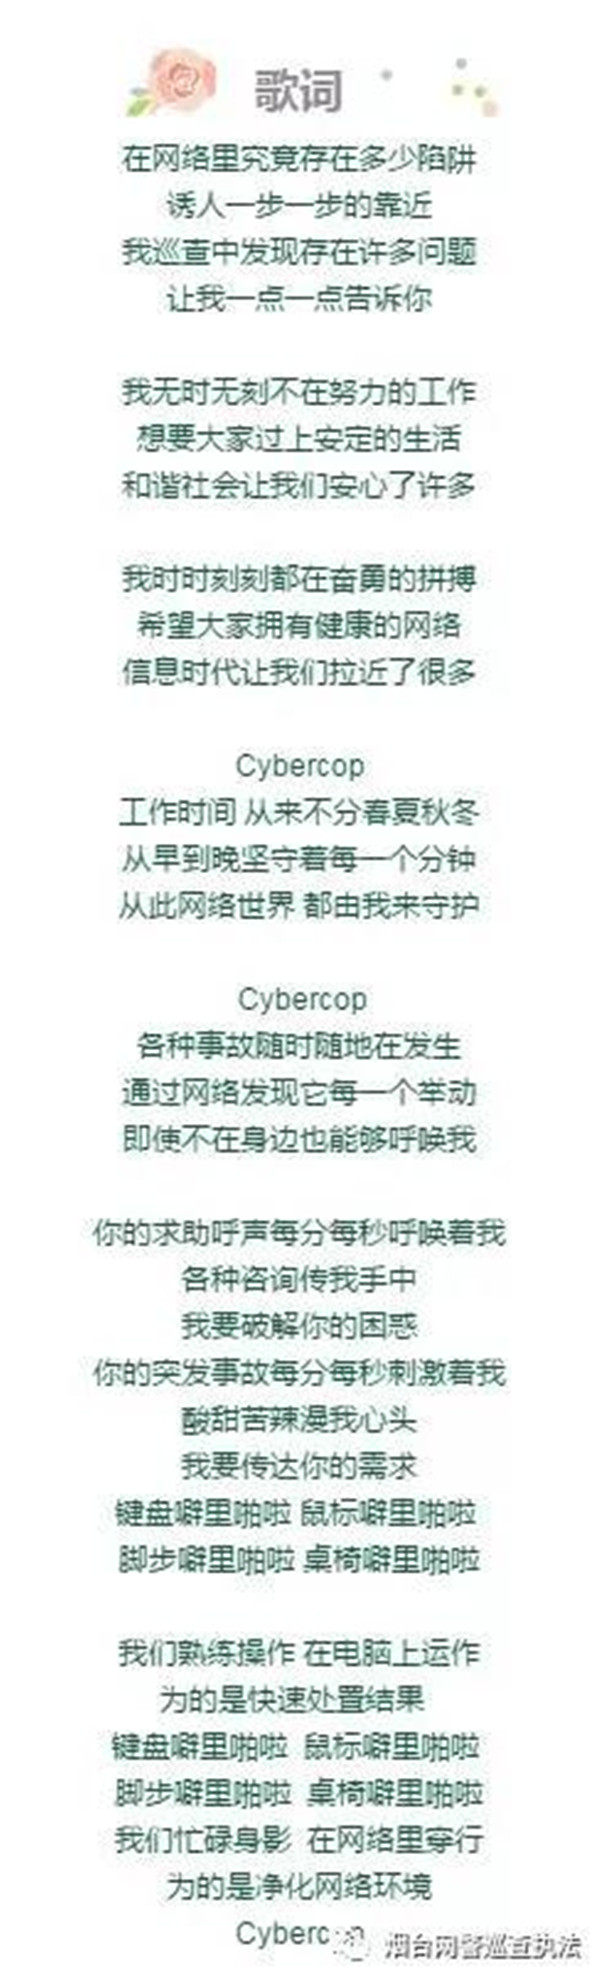 烟台网警微制作MV《cybercop》